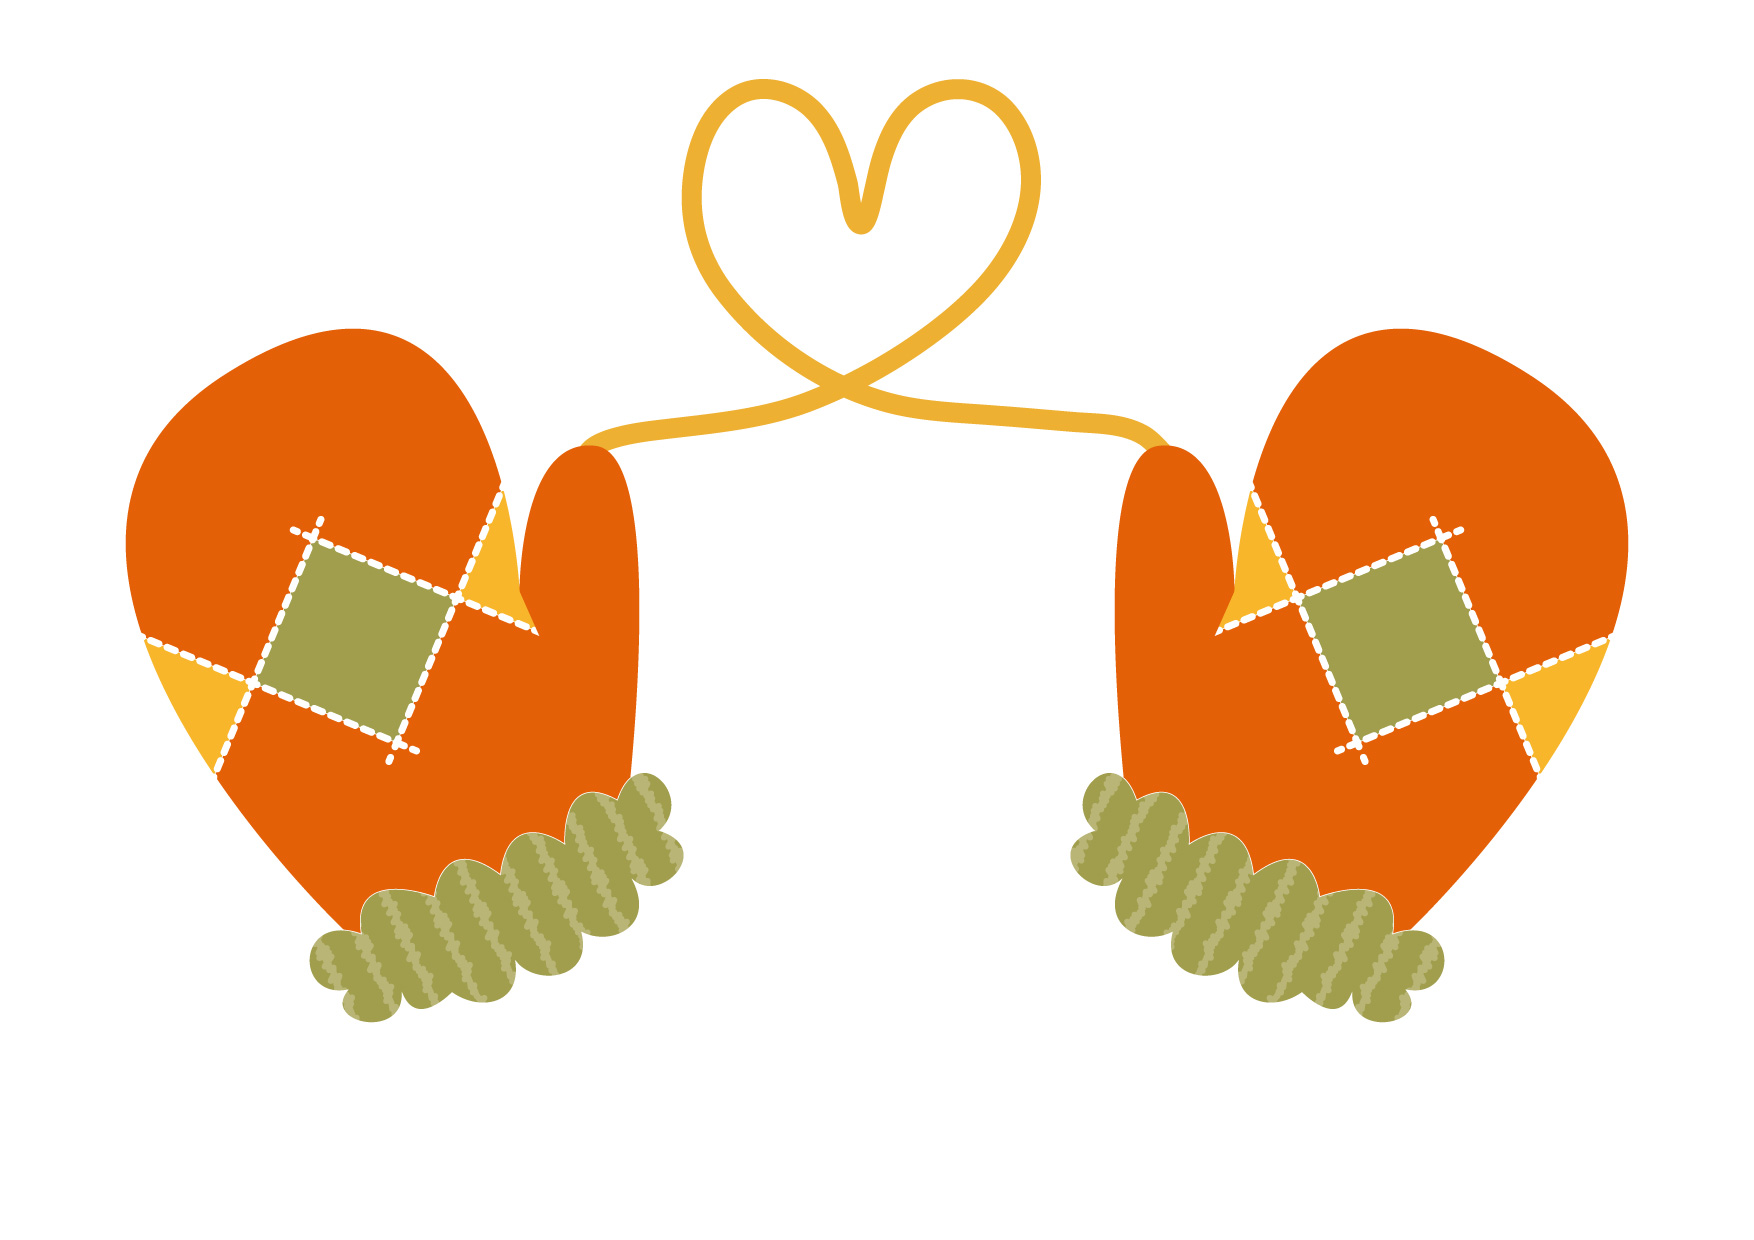 可愛いイラスト無料 手袋 ハート オレンジ色 Free Illustration Gloves Heart Orange 公式 イラスト素材 サイト イラストダウンロード